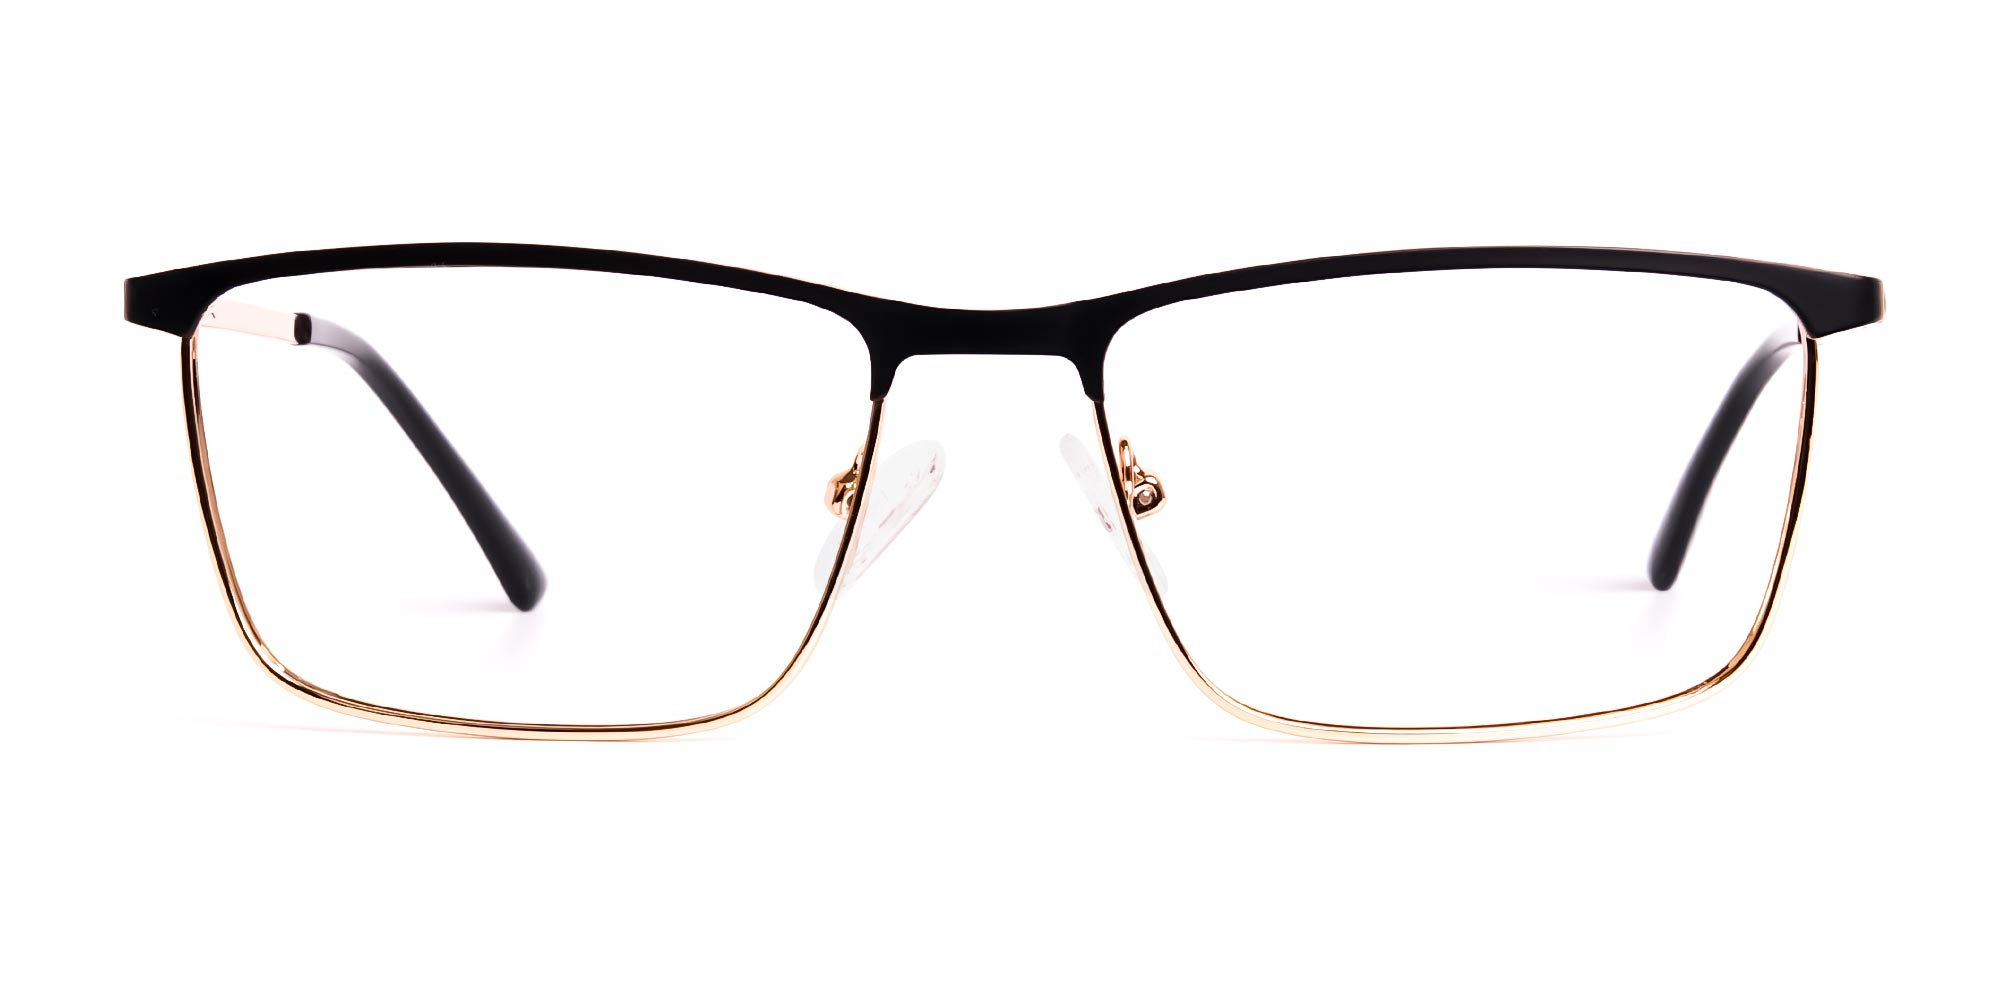 black and gold metal rectangular full rim glasses frames-1